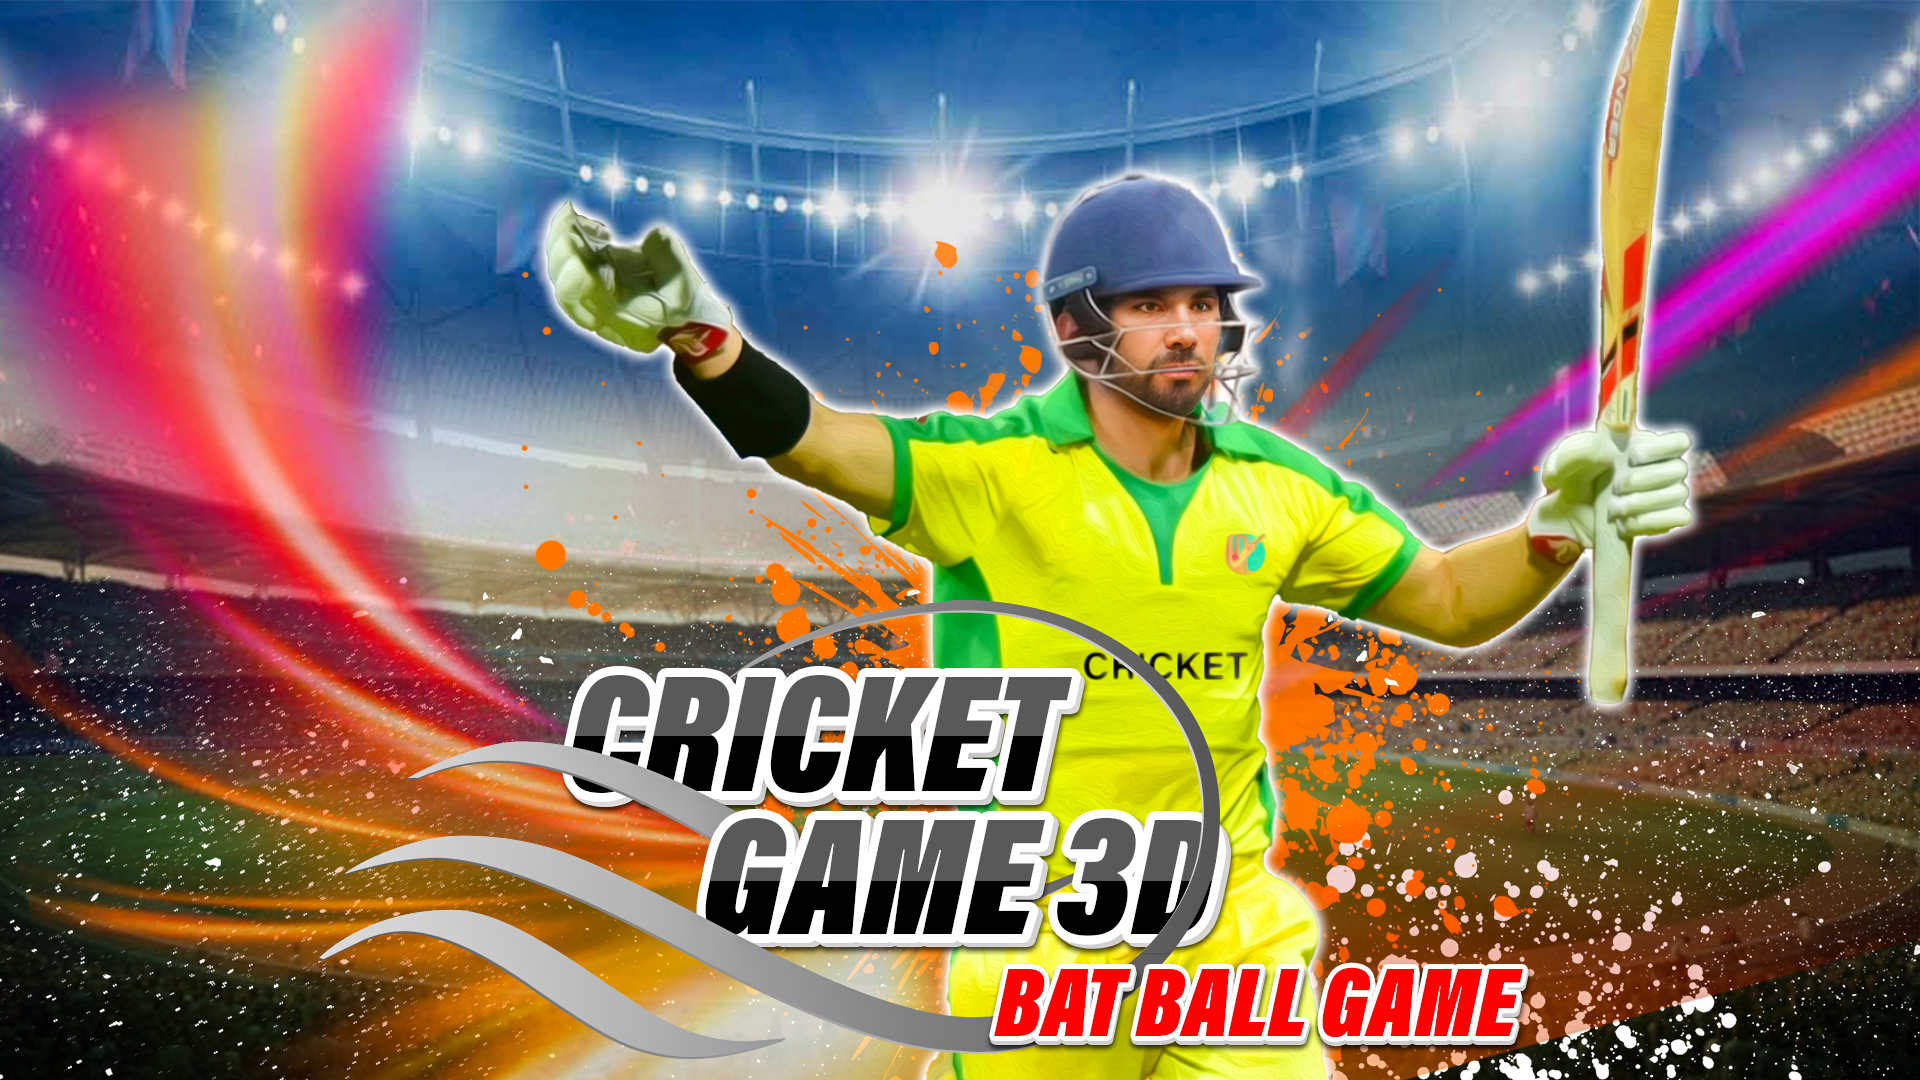 Screenshot 1 of Cricket Game 3D: Bat Ball Game 1.1.1